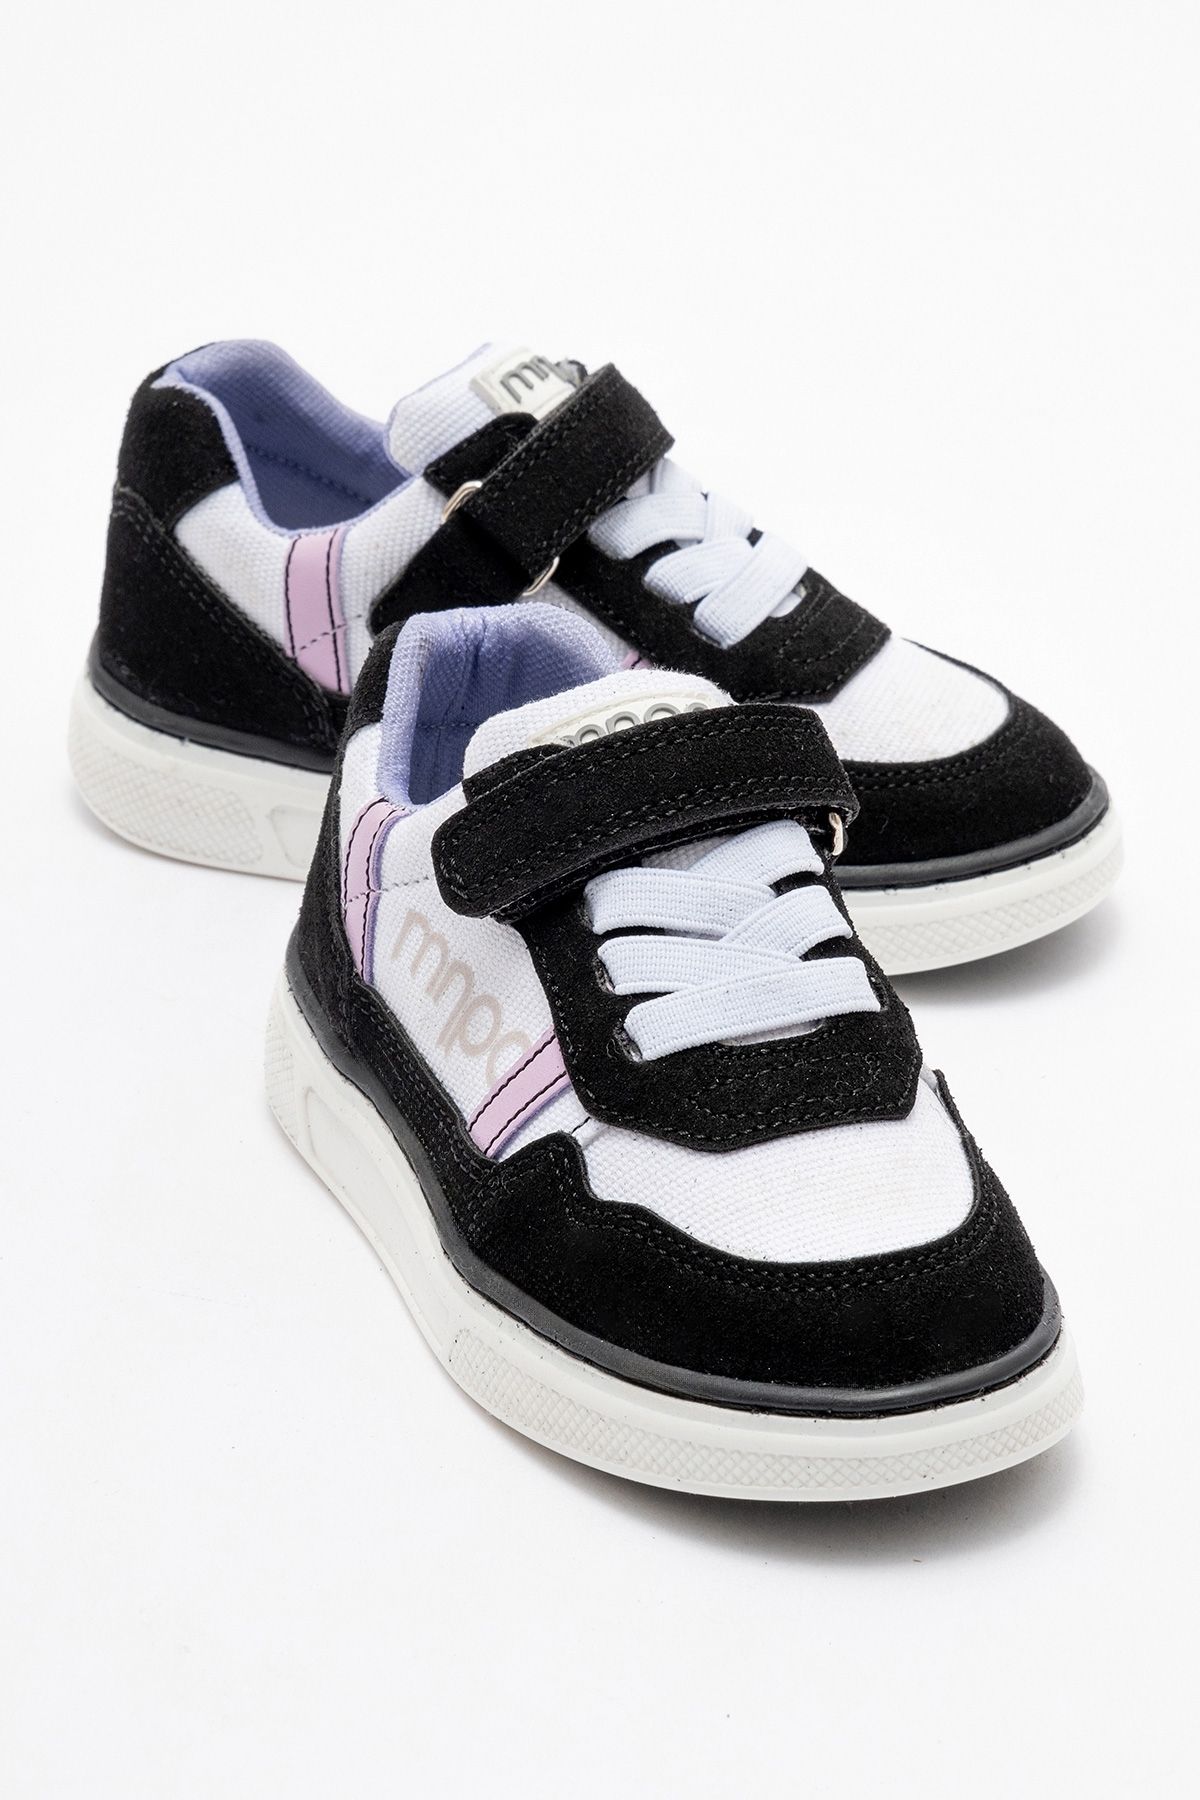 mnpc Kız Çocuk Siyah Sneaker Ayakkabı